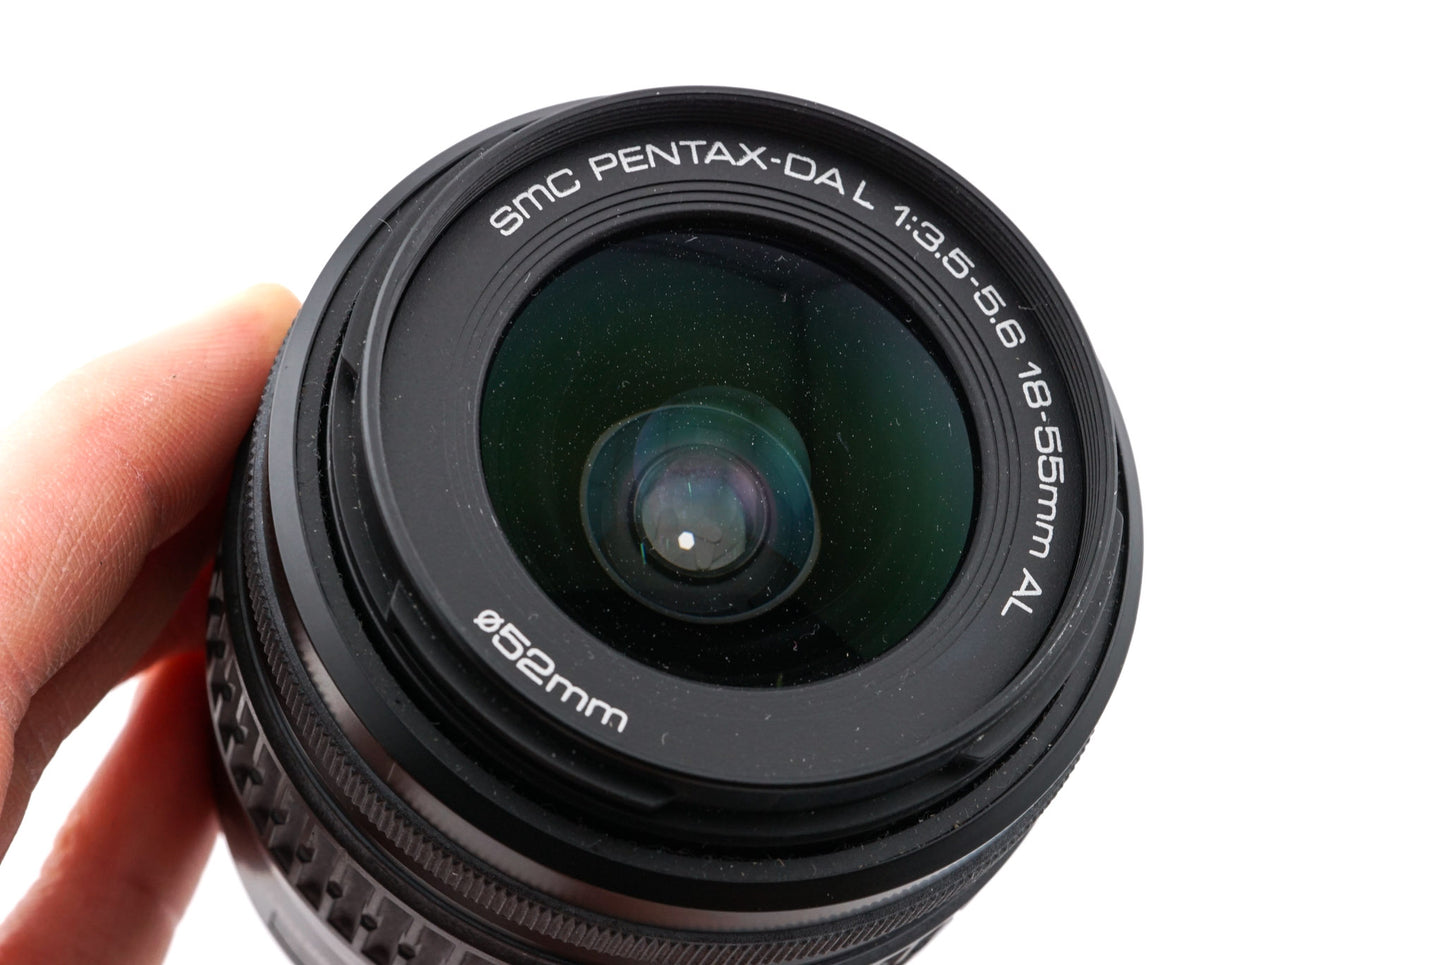 Pentax 18-55mm f3.5-5.6 SMC Pentax-DA AL